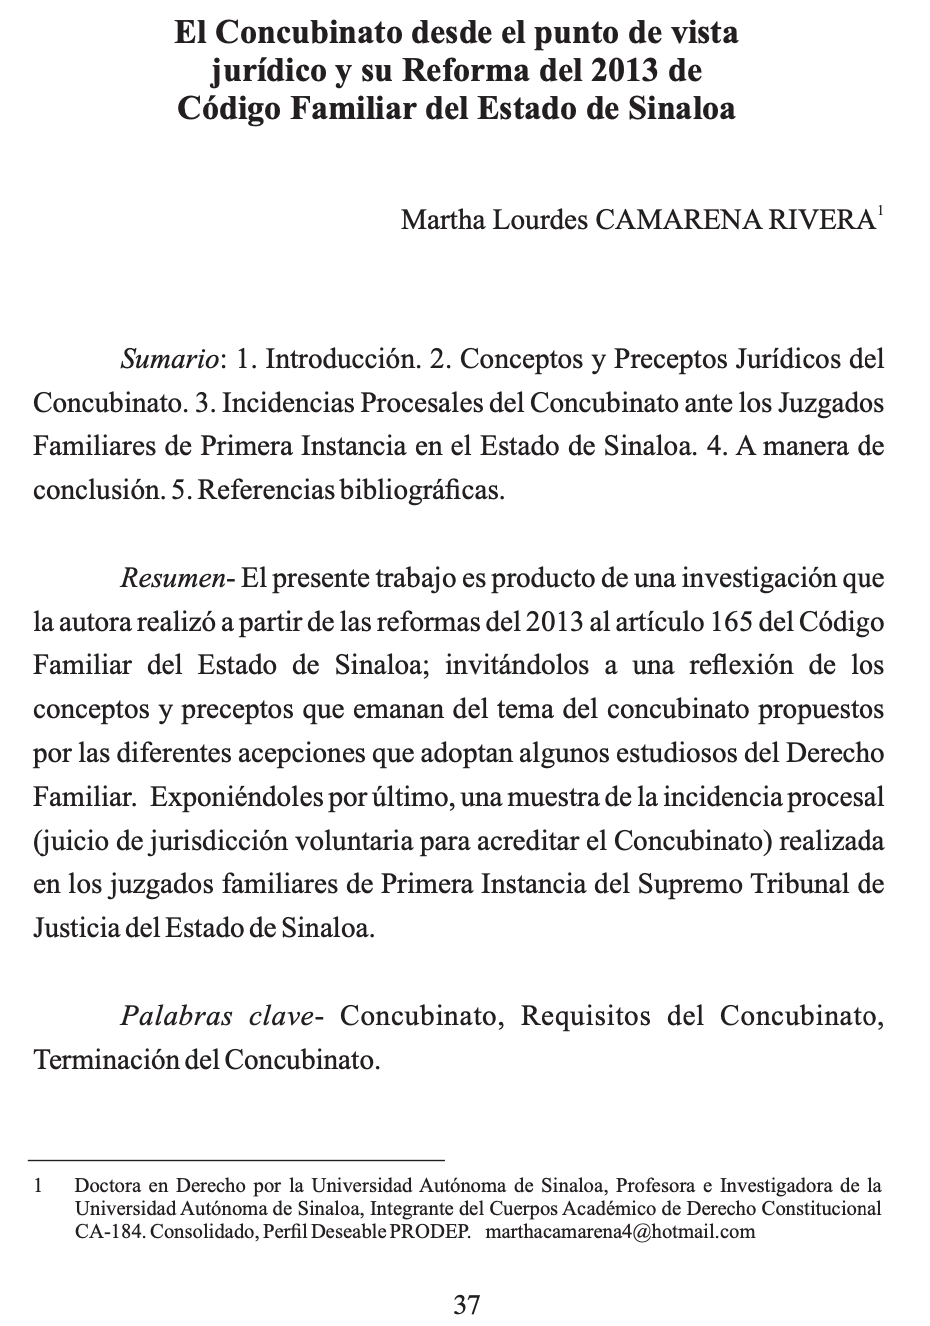 El concubinato desde el punto de vista jurídico y su reforma del 2013 de Código Familiar del Estado de Sinaloa